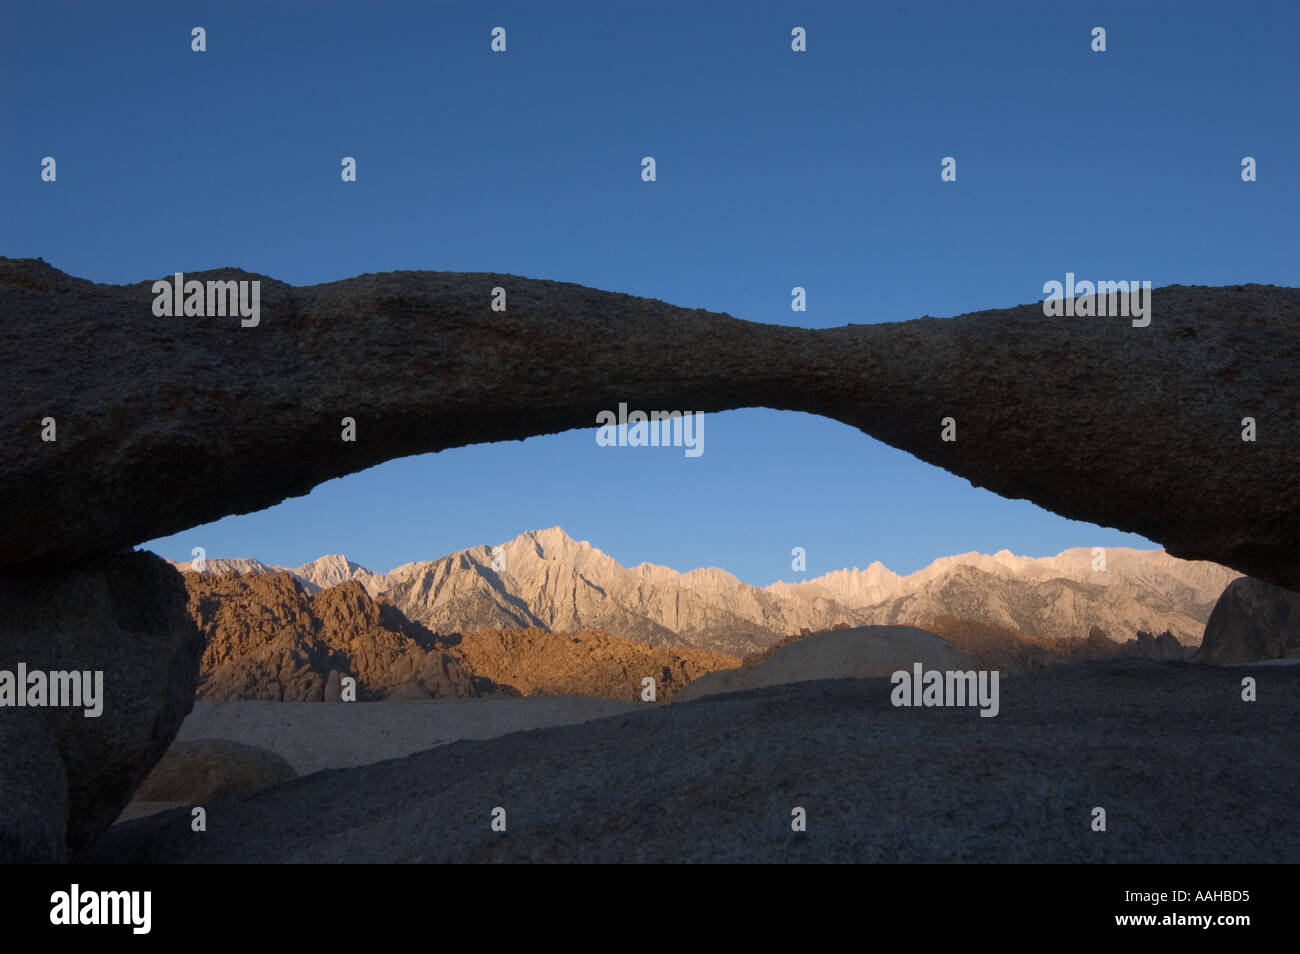 Pic de Lone Pine et whitney portal arch rock vu à travers l'Est de l'ALABAMA Hills dans les montagnes de la Sierra Nevada en Californie usa Banque D'Images